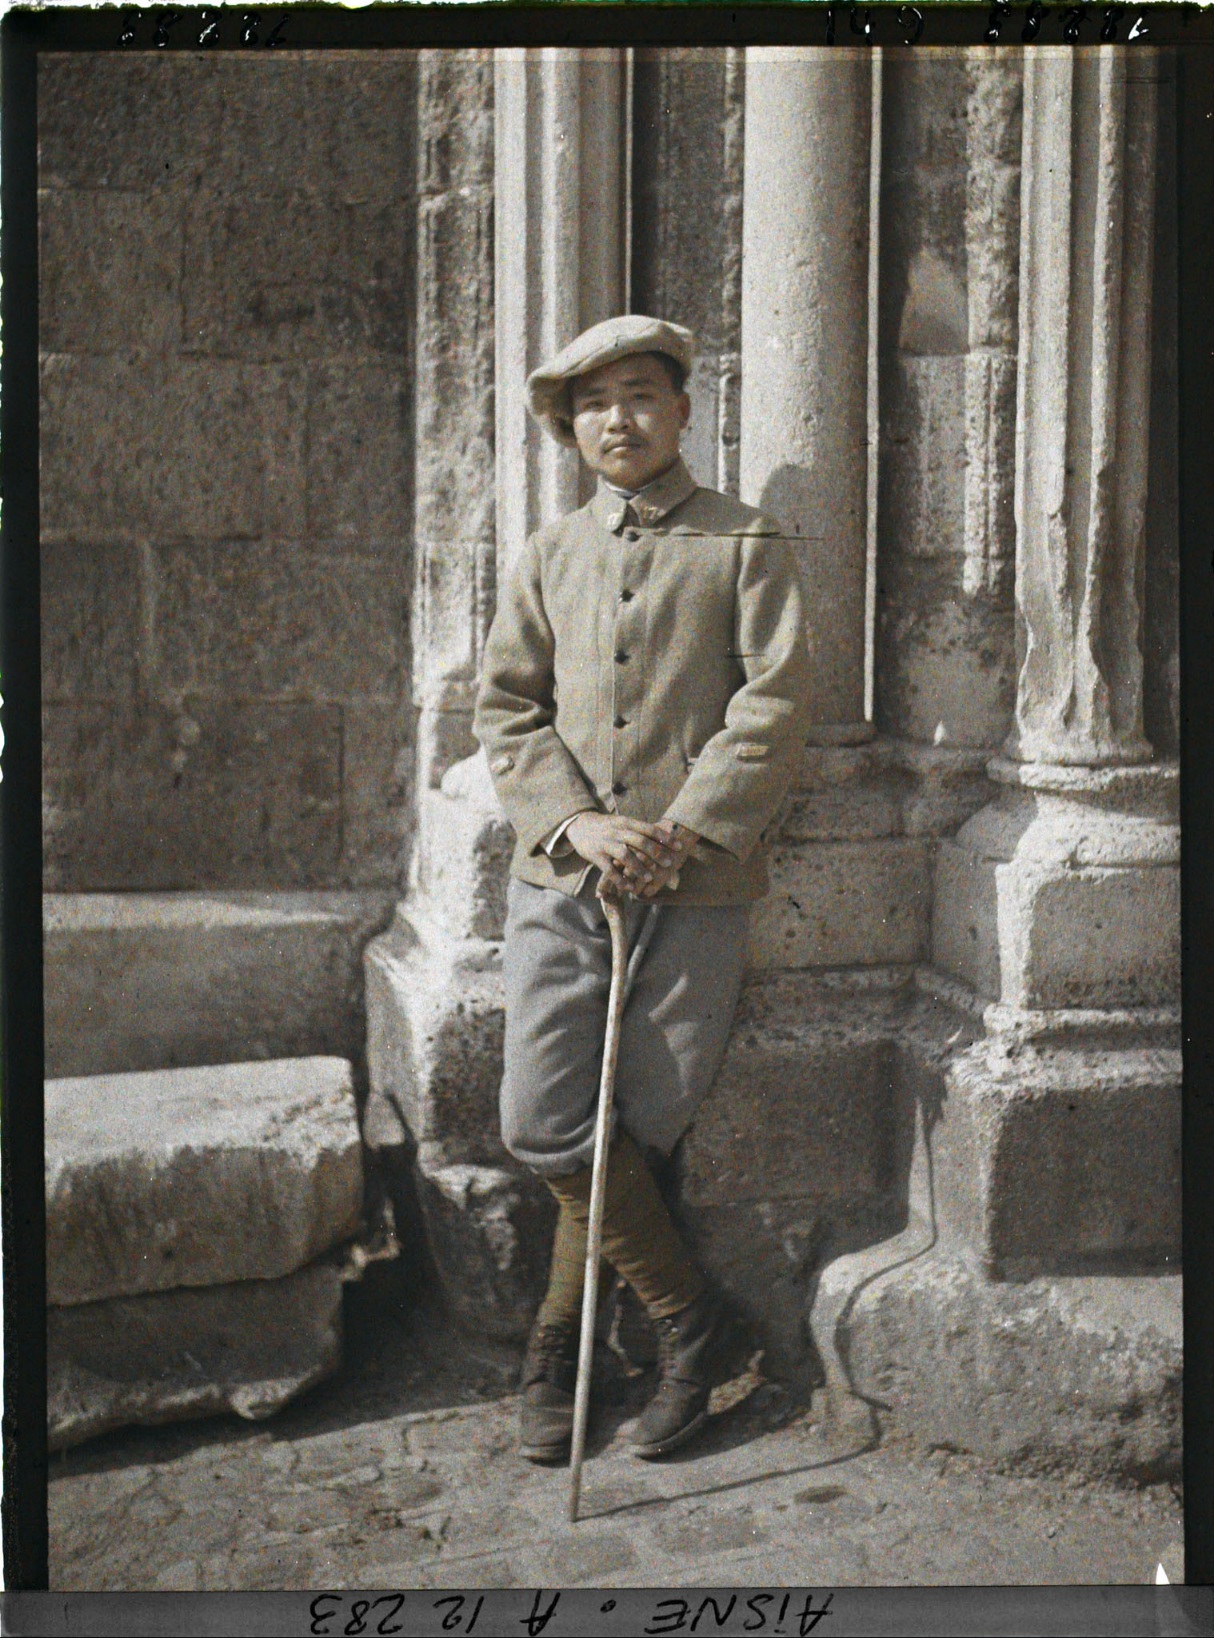 Soissons, Aisne, France, soldat du 17e régiment indochinois. Juin 1917. Autochrome, Service Photographique de l'Armée française.